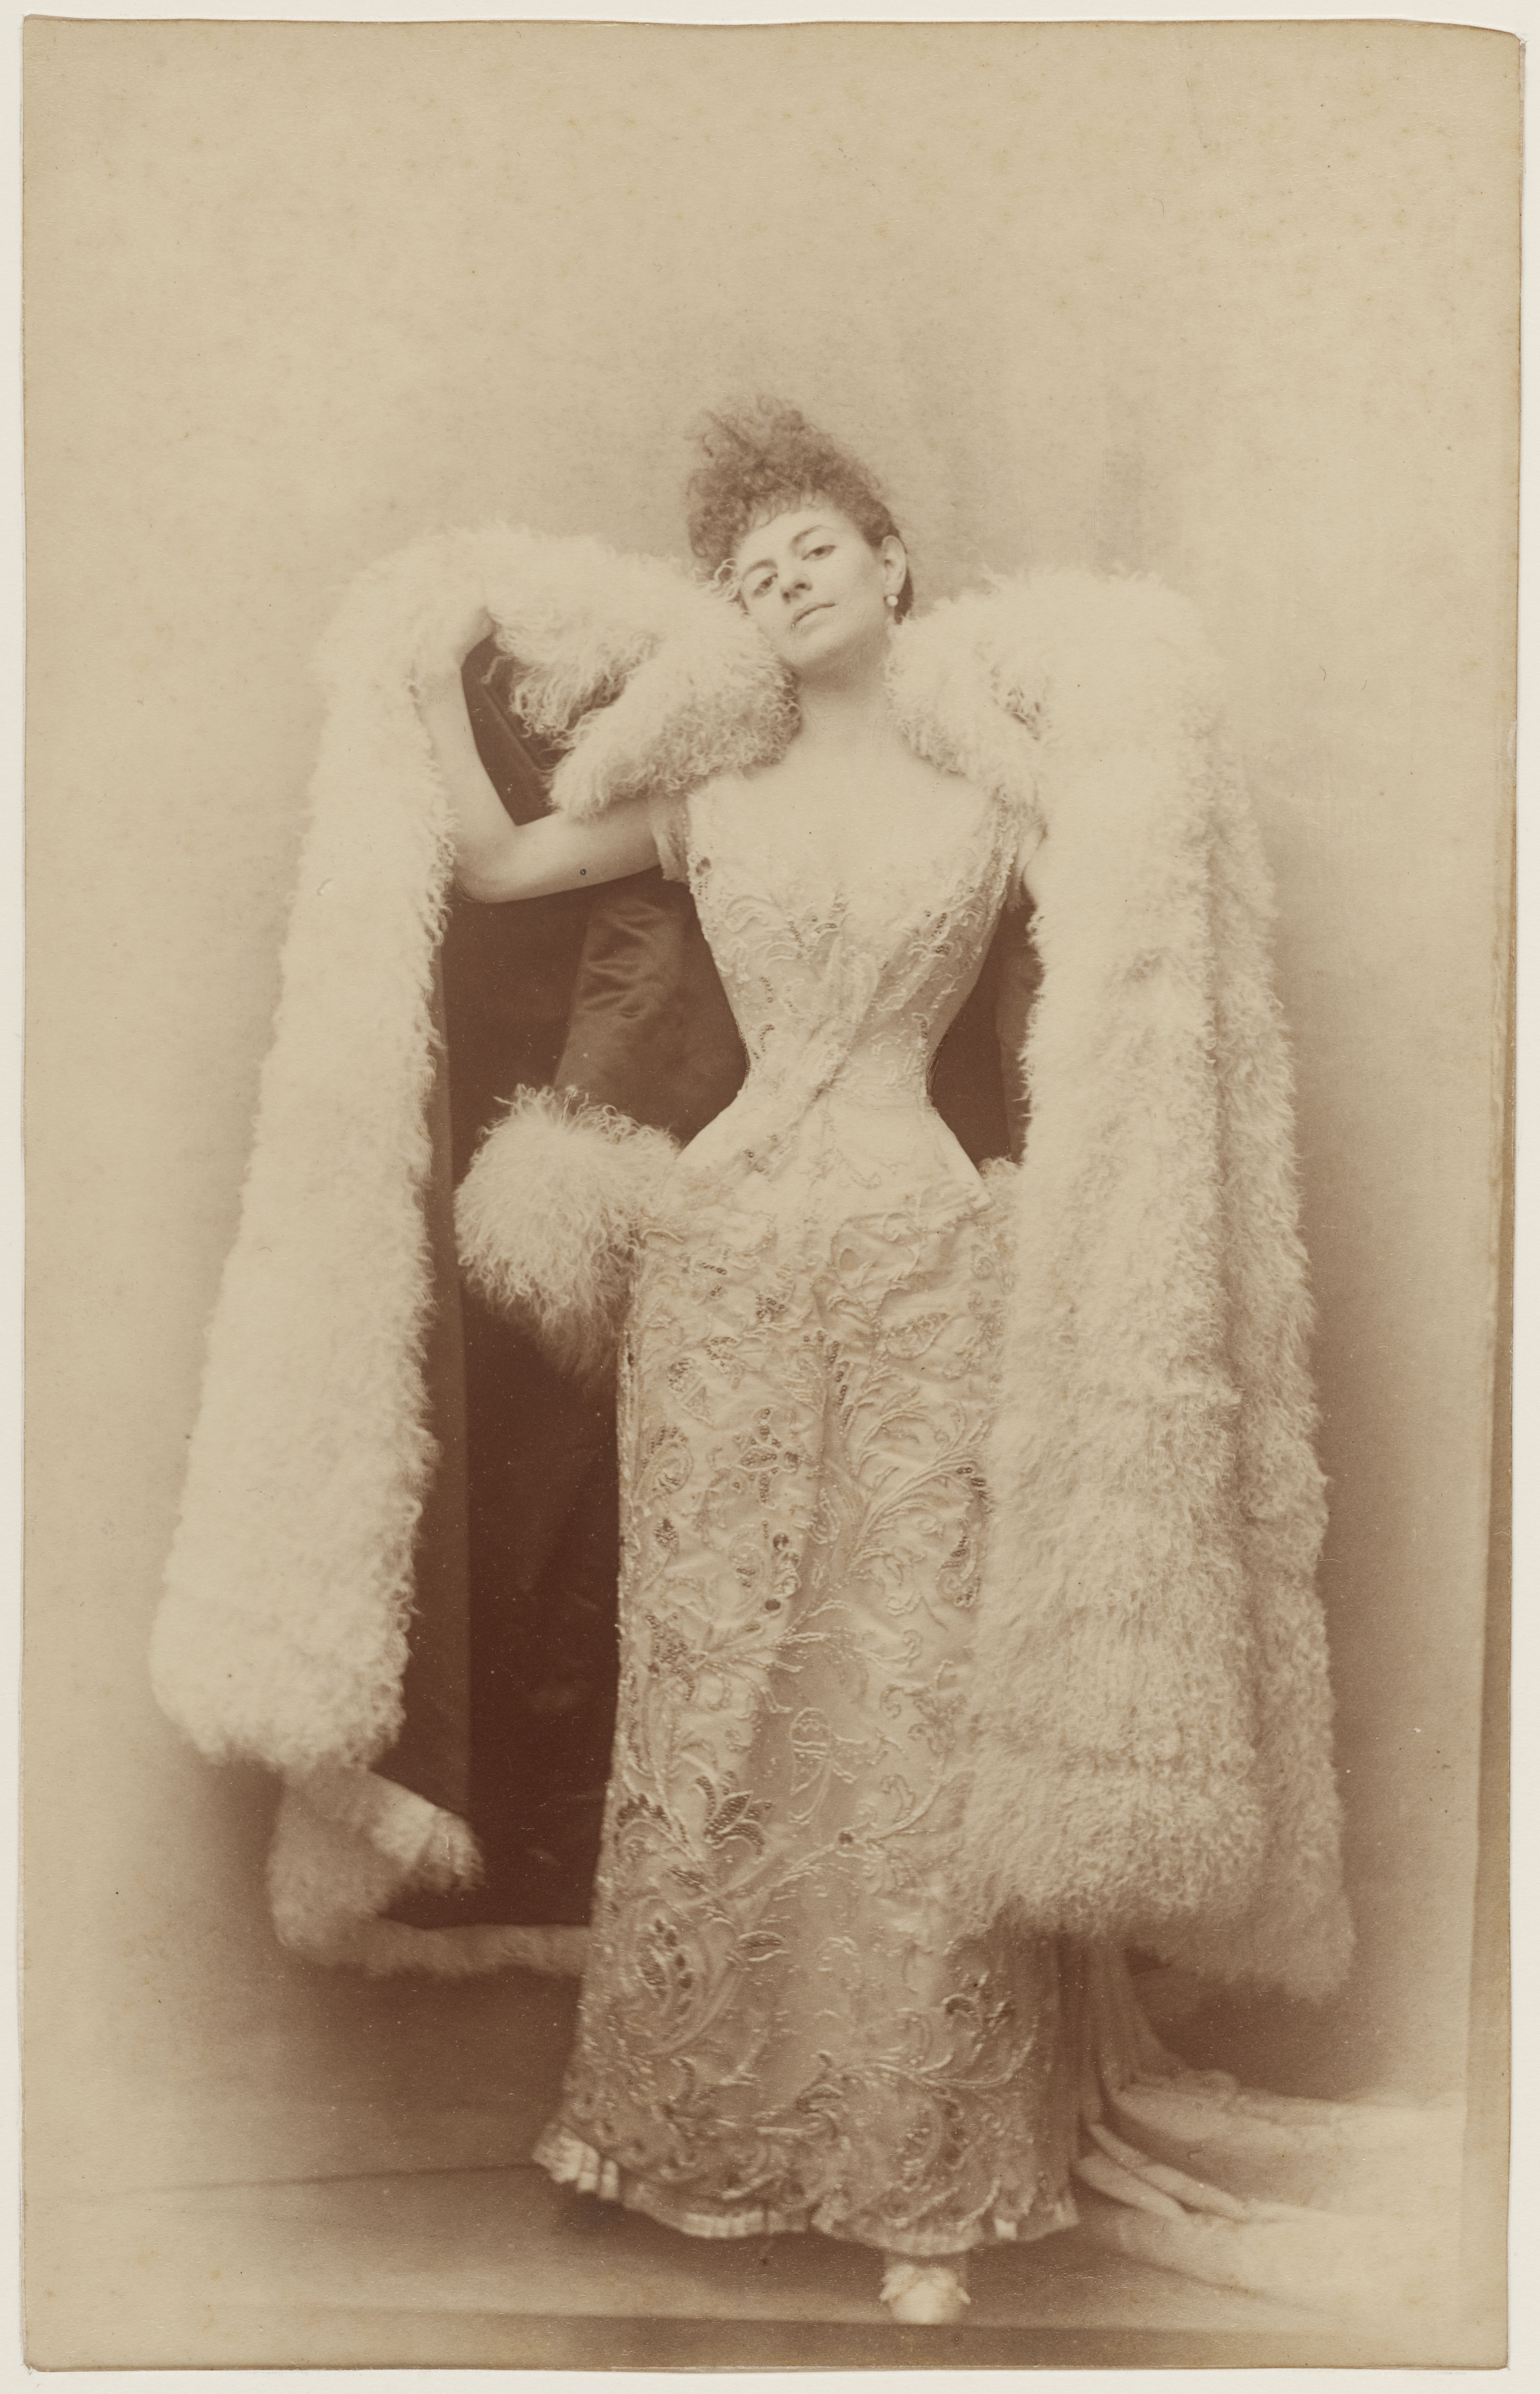 La Comtesse Greffulhe dans une robe de bal. Papier albuminé, vers 1887. Galliera, musée de la Mode de la Ville de Paris.